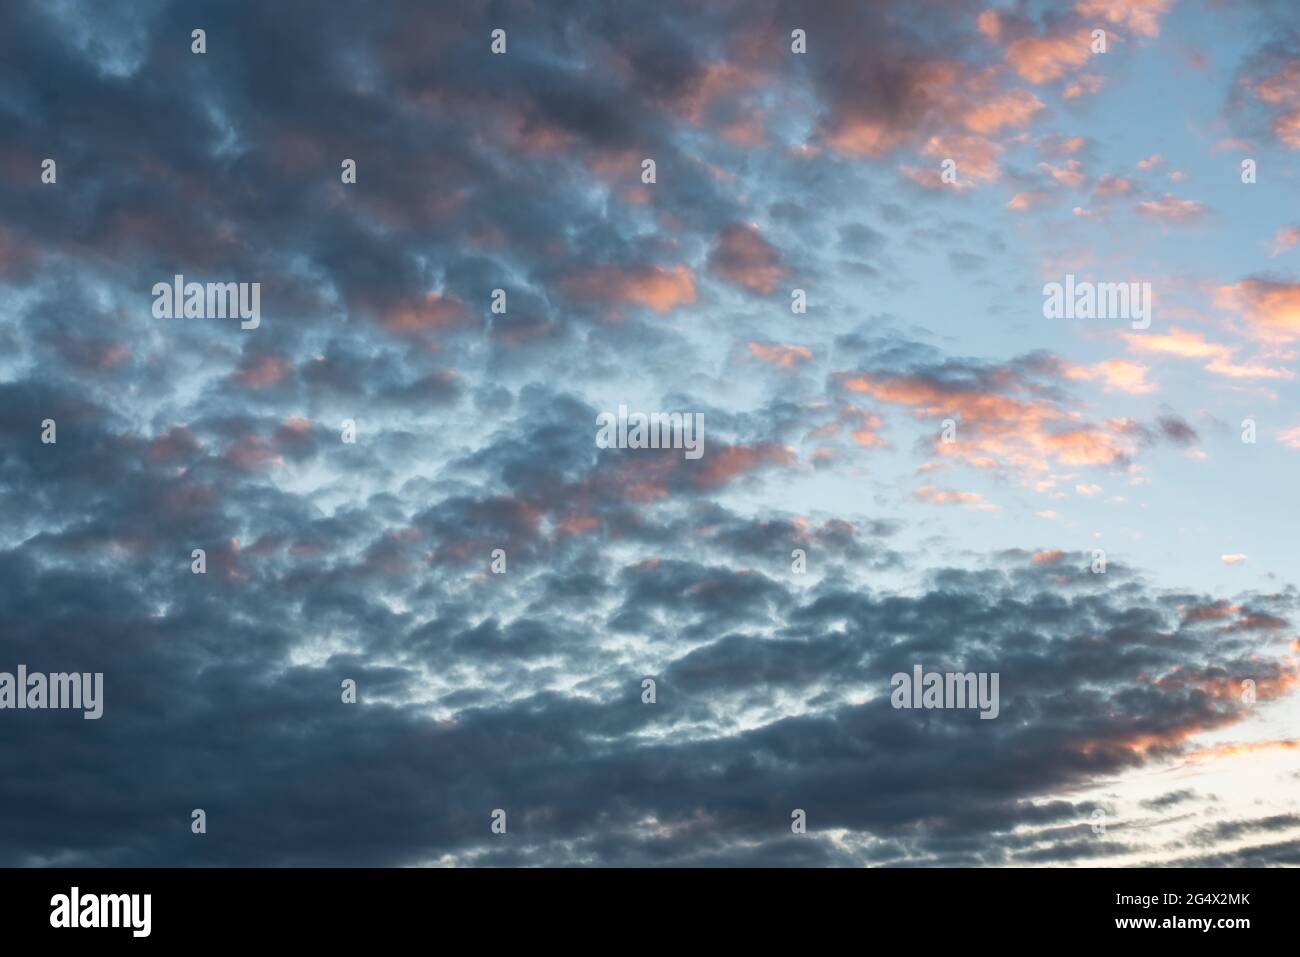 fotografie del cielo tormentoso y tranquilo con nubes cumulus estractus azules, blancas, naranjas y negra , con un molino de agua de fondo, horizontal Stockfoto